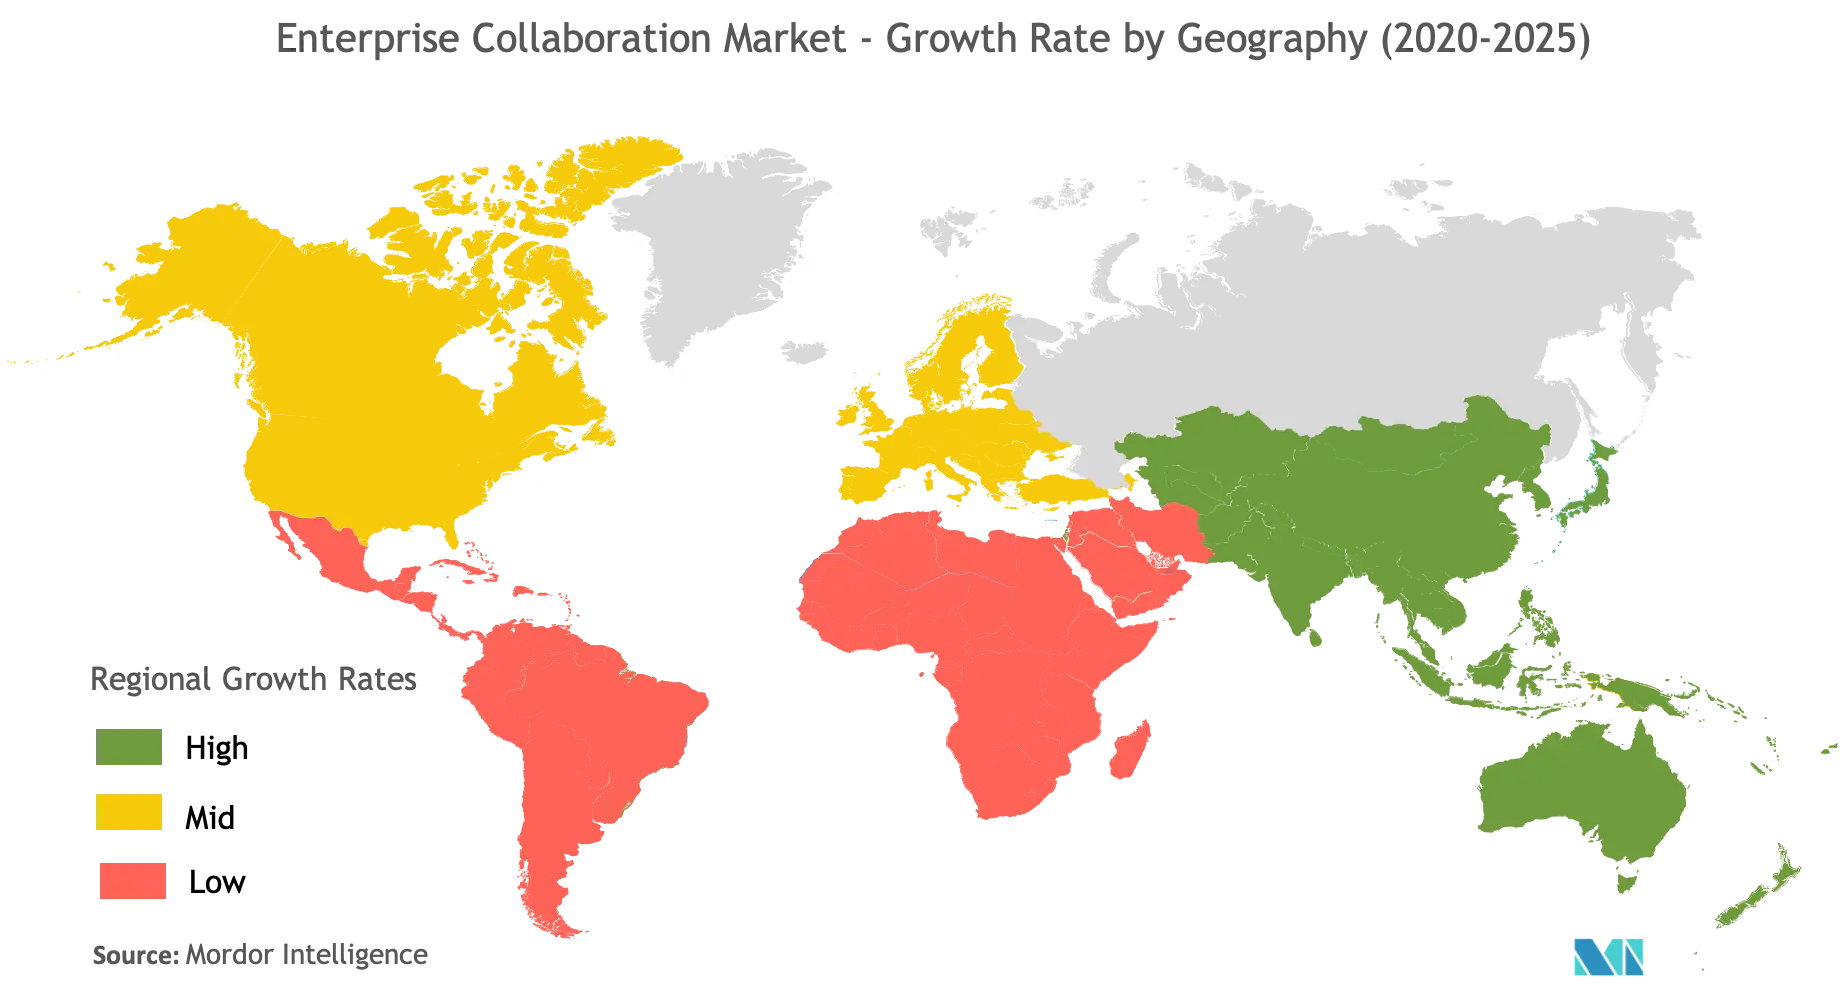 Enterprise Collaboration Market Growth